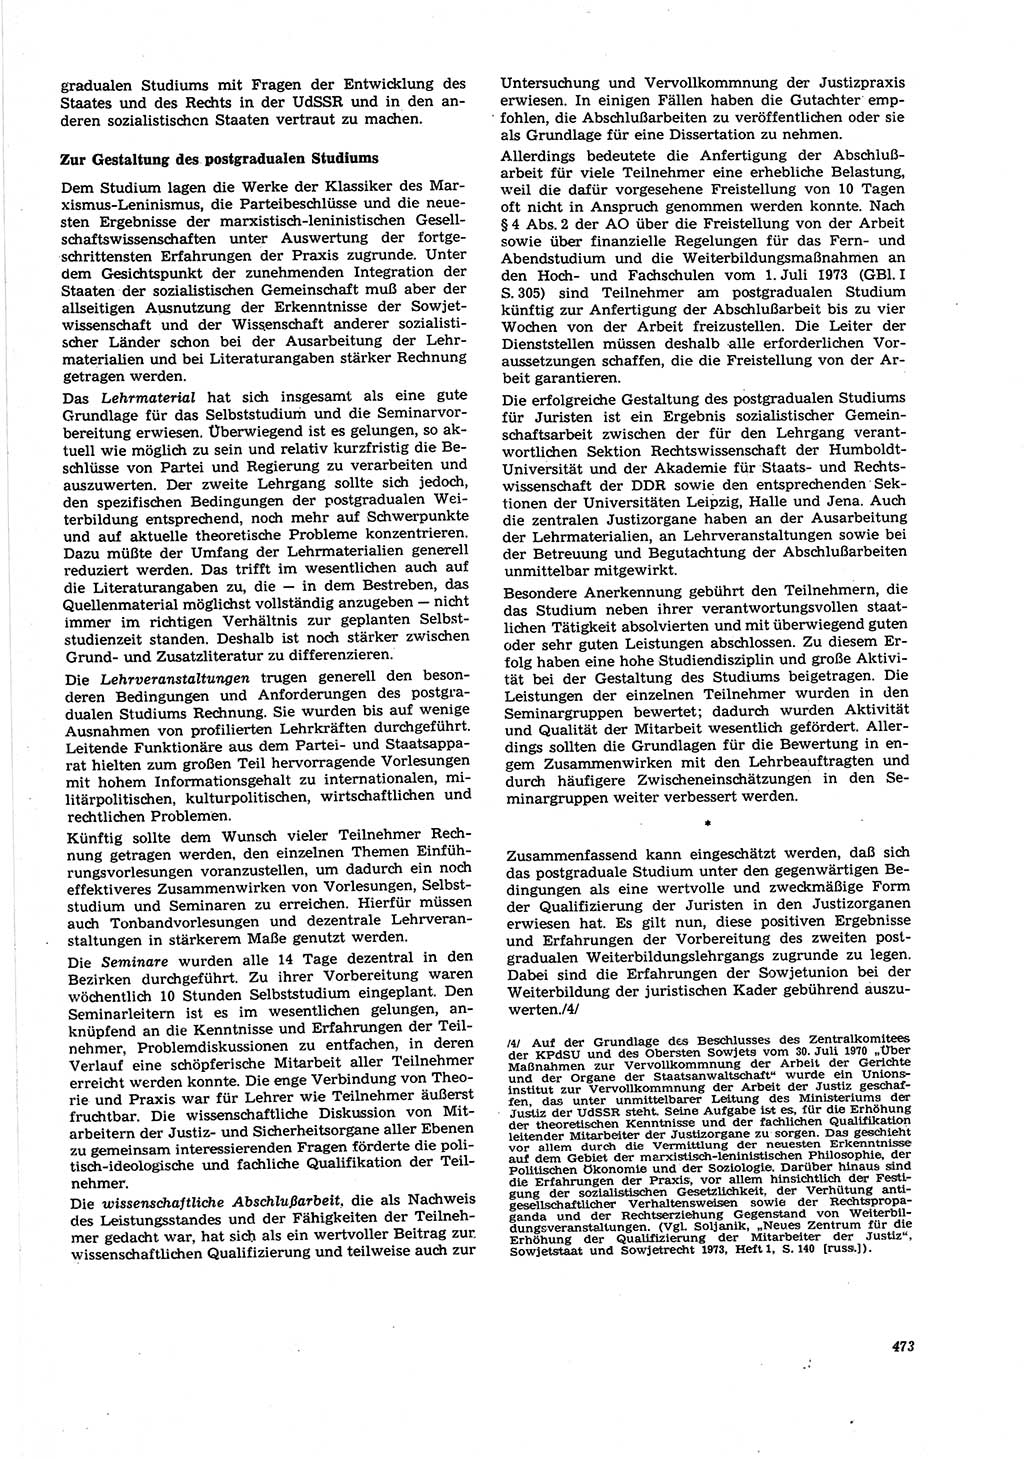 Neue Justiz (NJ), Zeitschrift für Recht und Rechtswissenschaft [Deutsche Demokratische Republik (DDR)], 27. Jahrgang 1973, Seite 473 (NJ DDR 1973, S. 473)